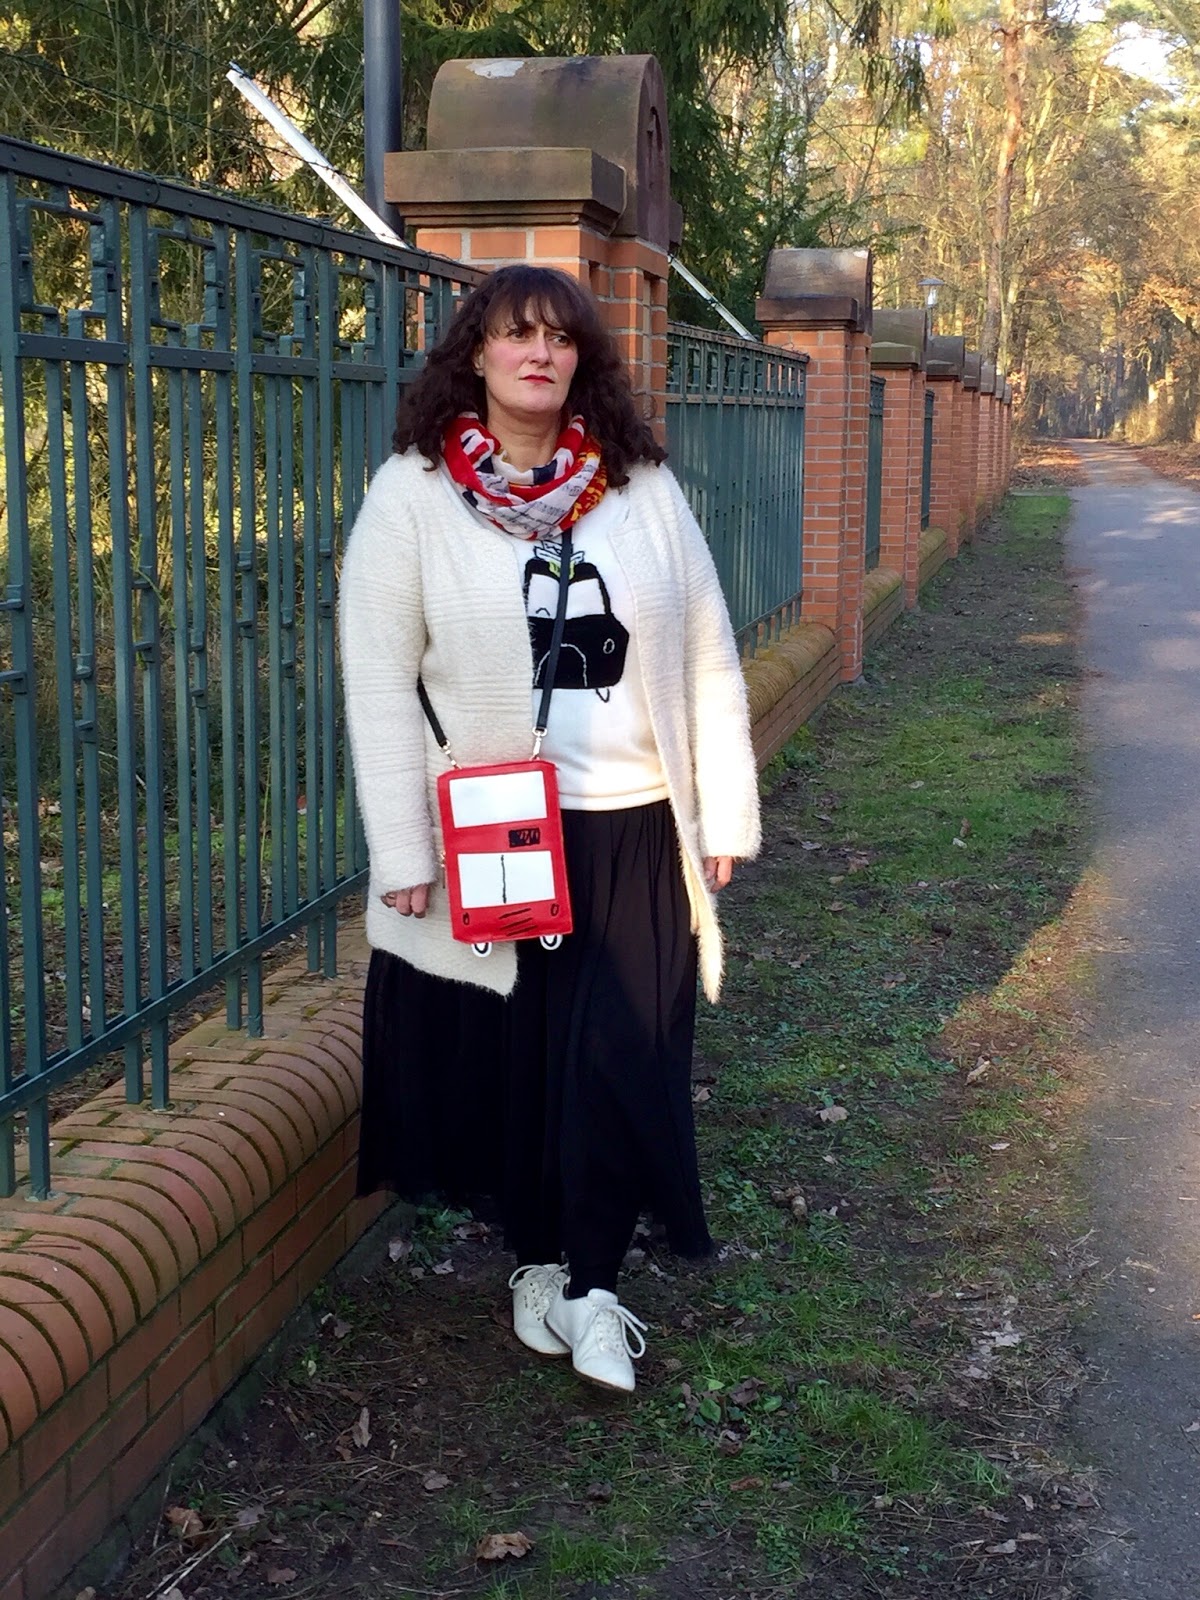 Tinaspinkfriday - Modeblog - Outfit Inspiration in großer Größe: Januar 2016